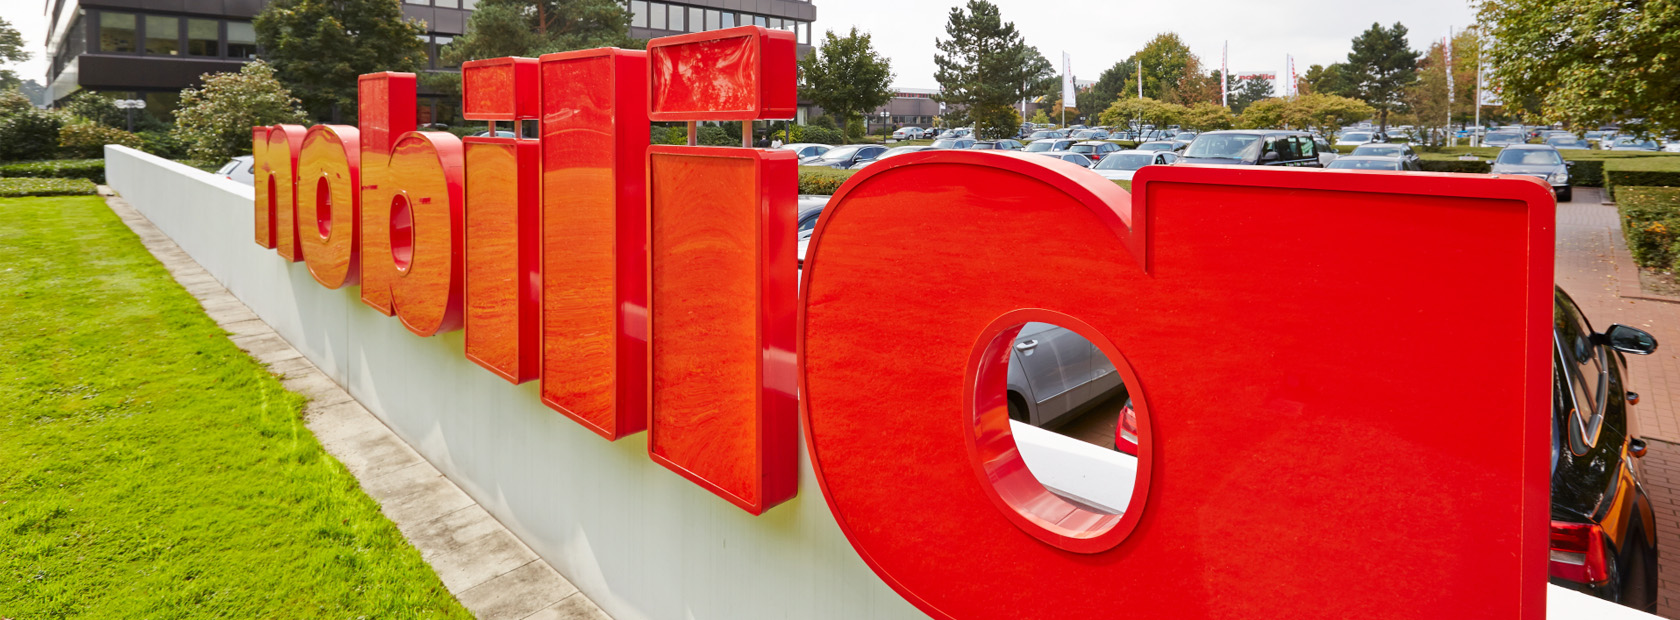 Rote dreidimensionale Buchstabenschilder, die ein Wort bilden, im Freien installiert, mit üppigem Grün und einem modernen Gebäude im Hintergrund.